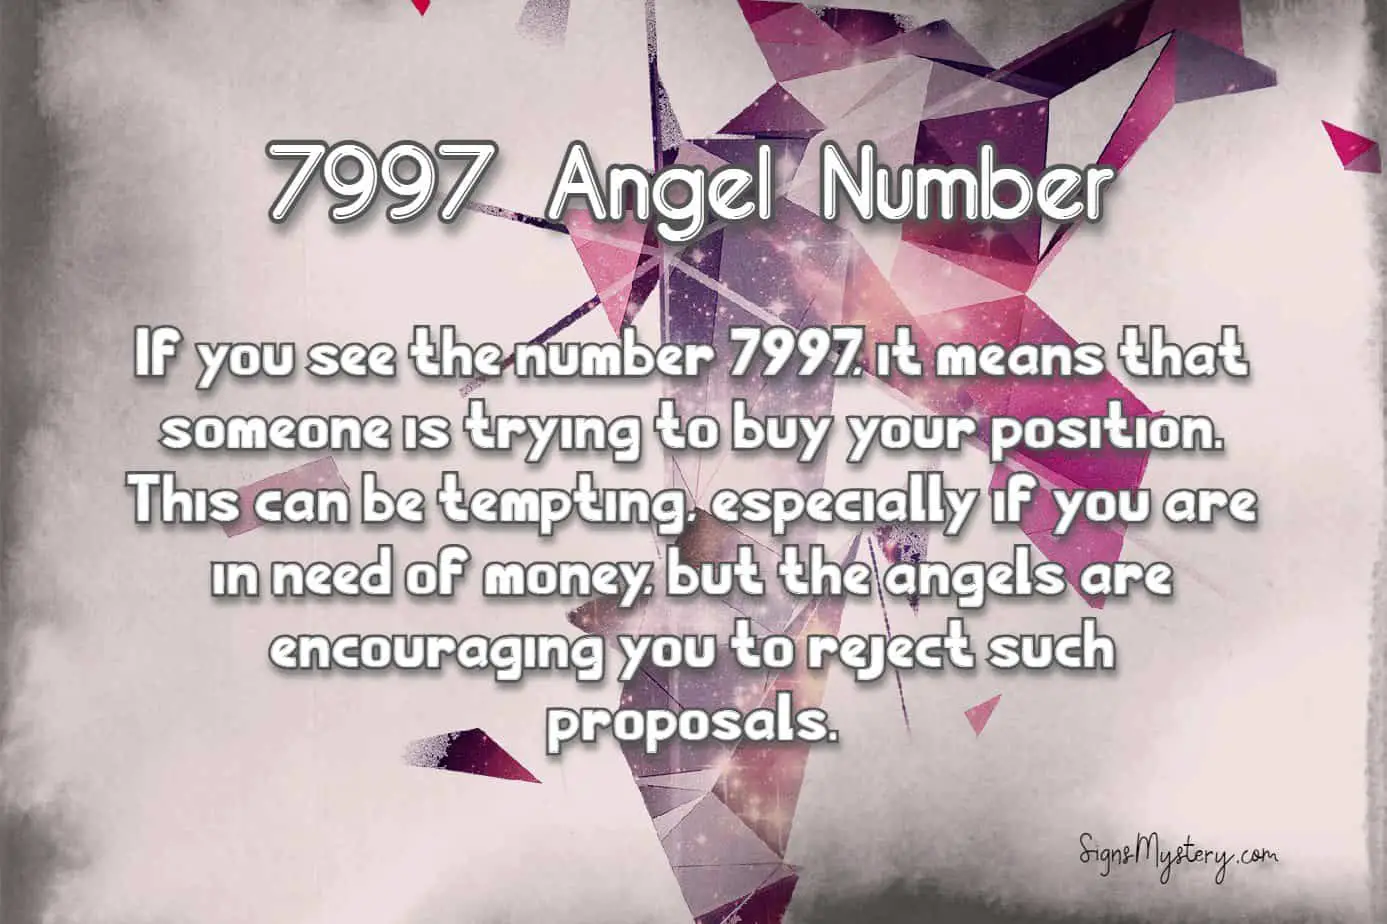 angel number 7997